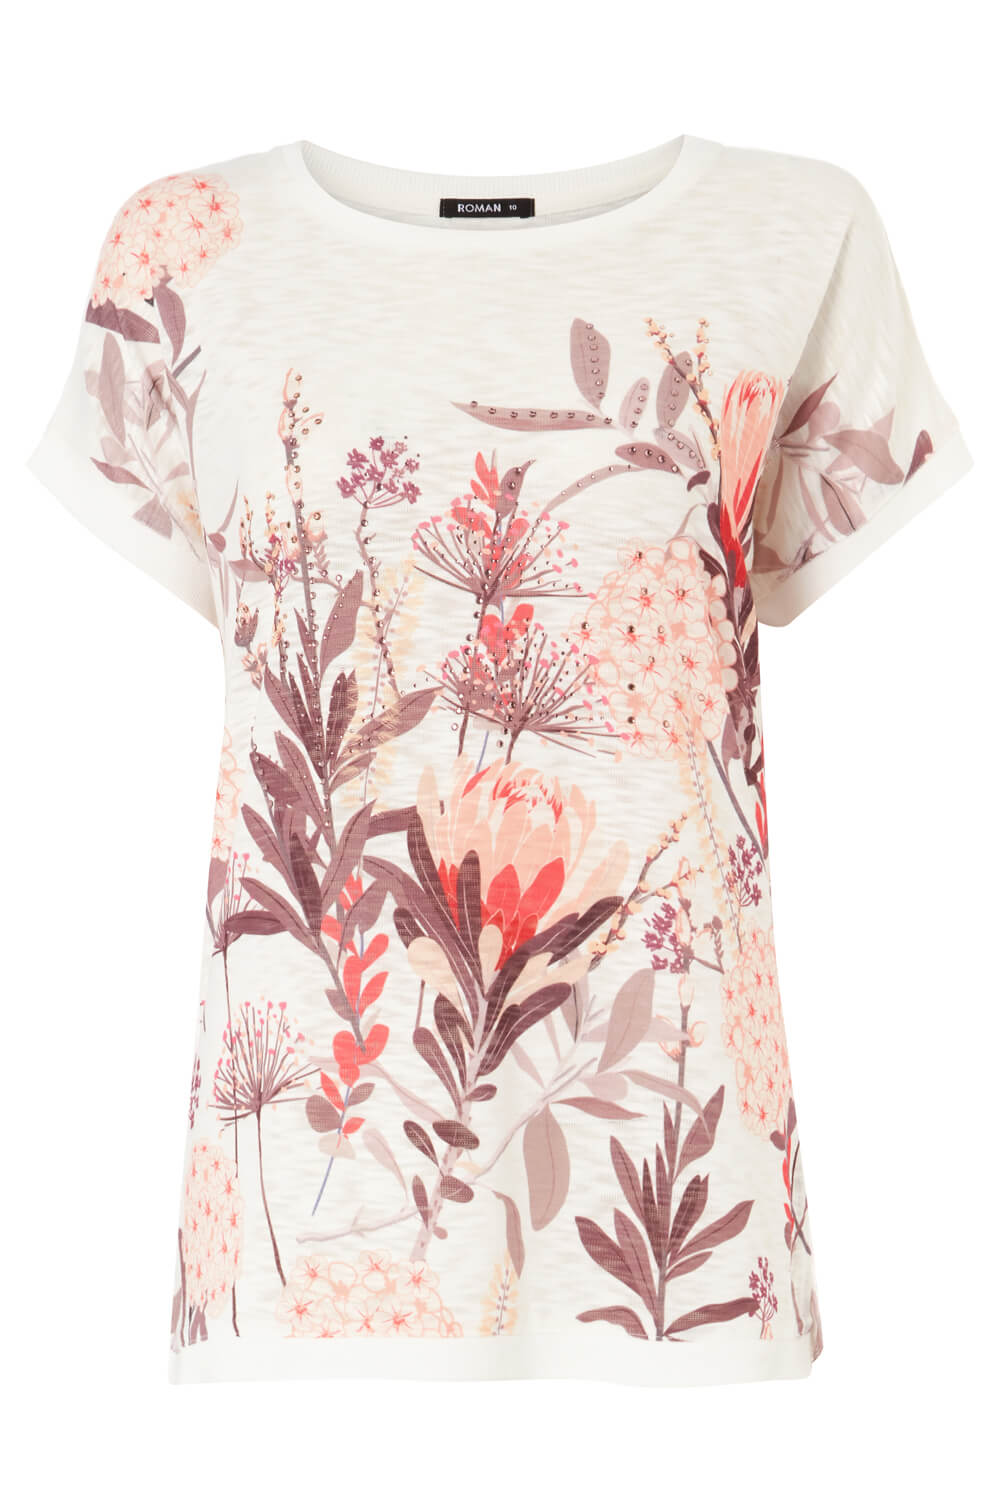 Natural  Embellished Floral Print T-Shirt, Image 5 of 5